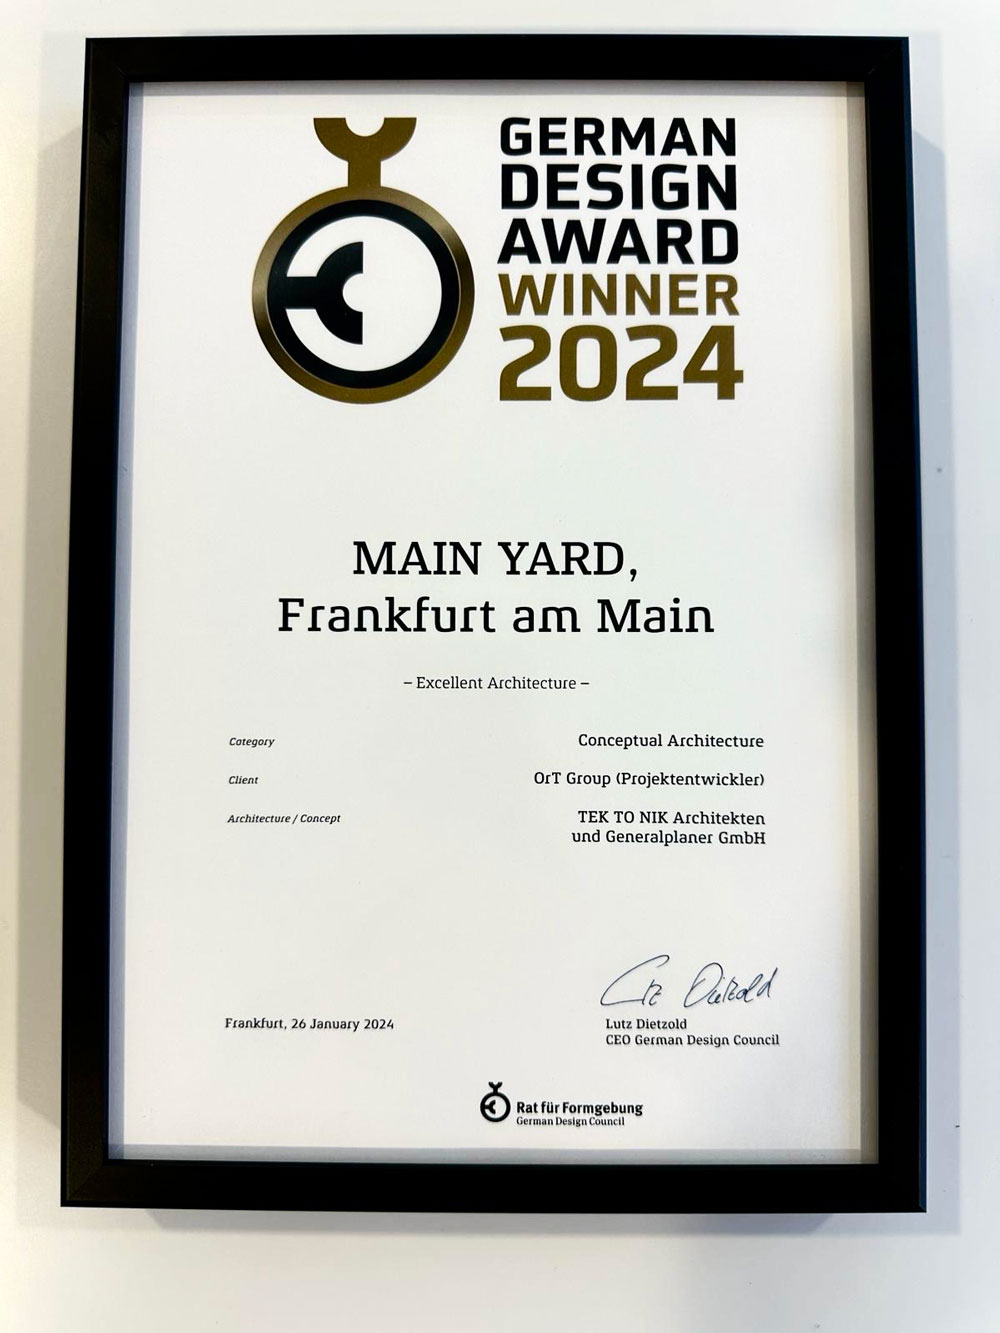 TEK TO NIK ist ein Gewinner beim German Design Award 2024